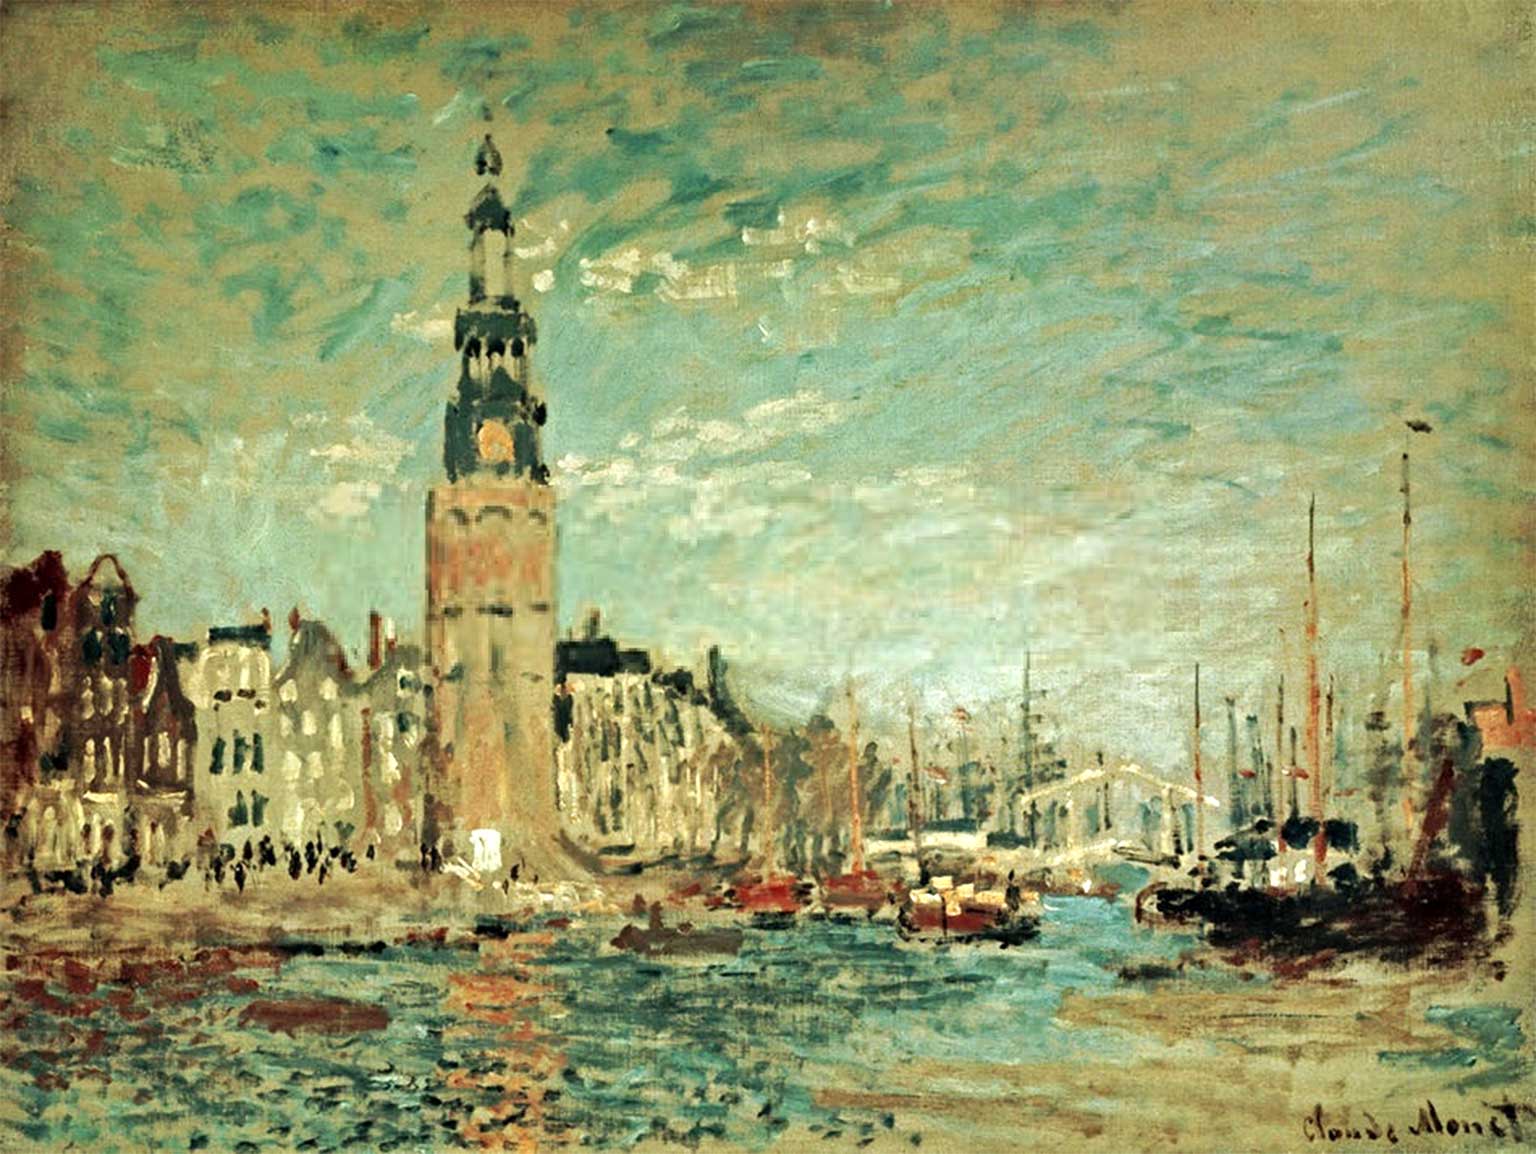 Montelbaanstoren, Amsterdam, schilderij van Claude Monet uit 1874